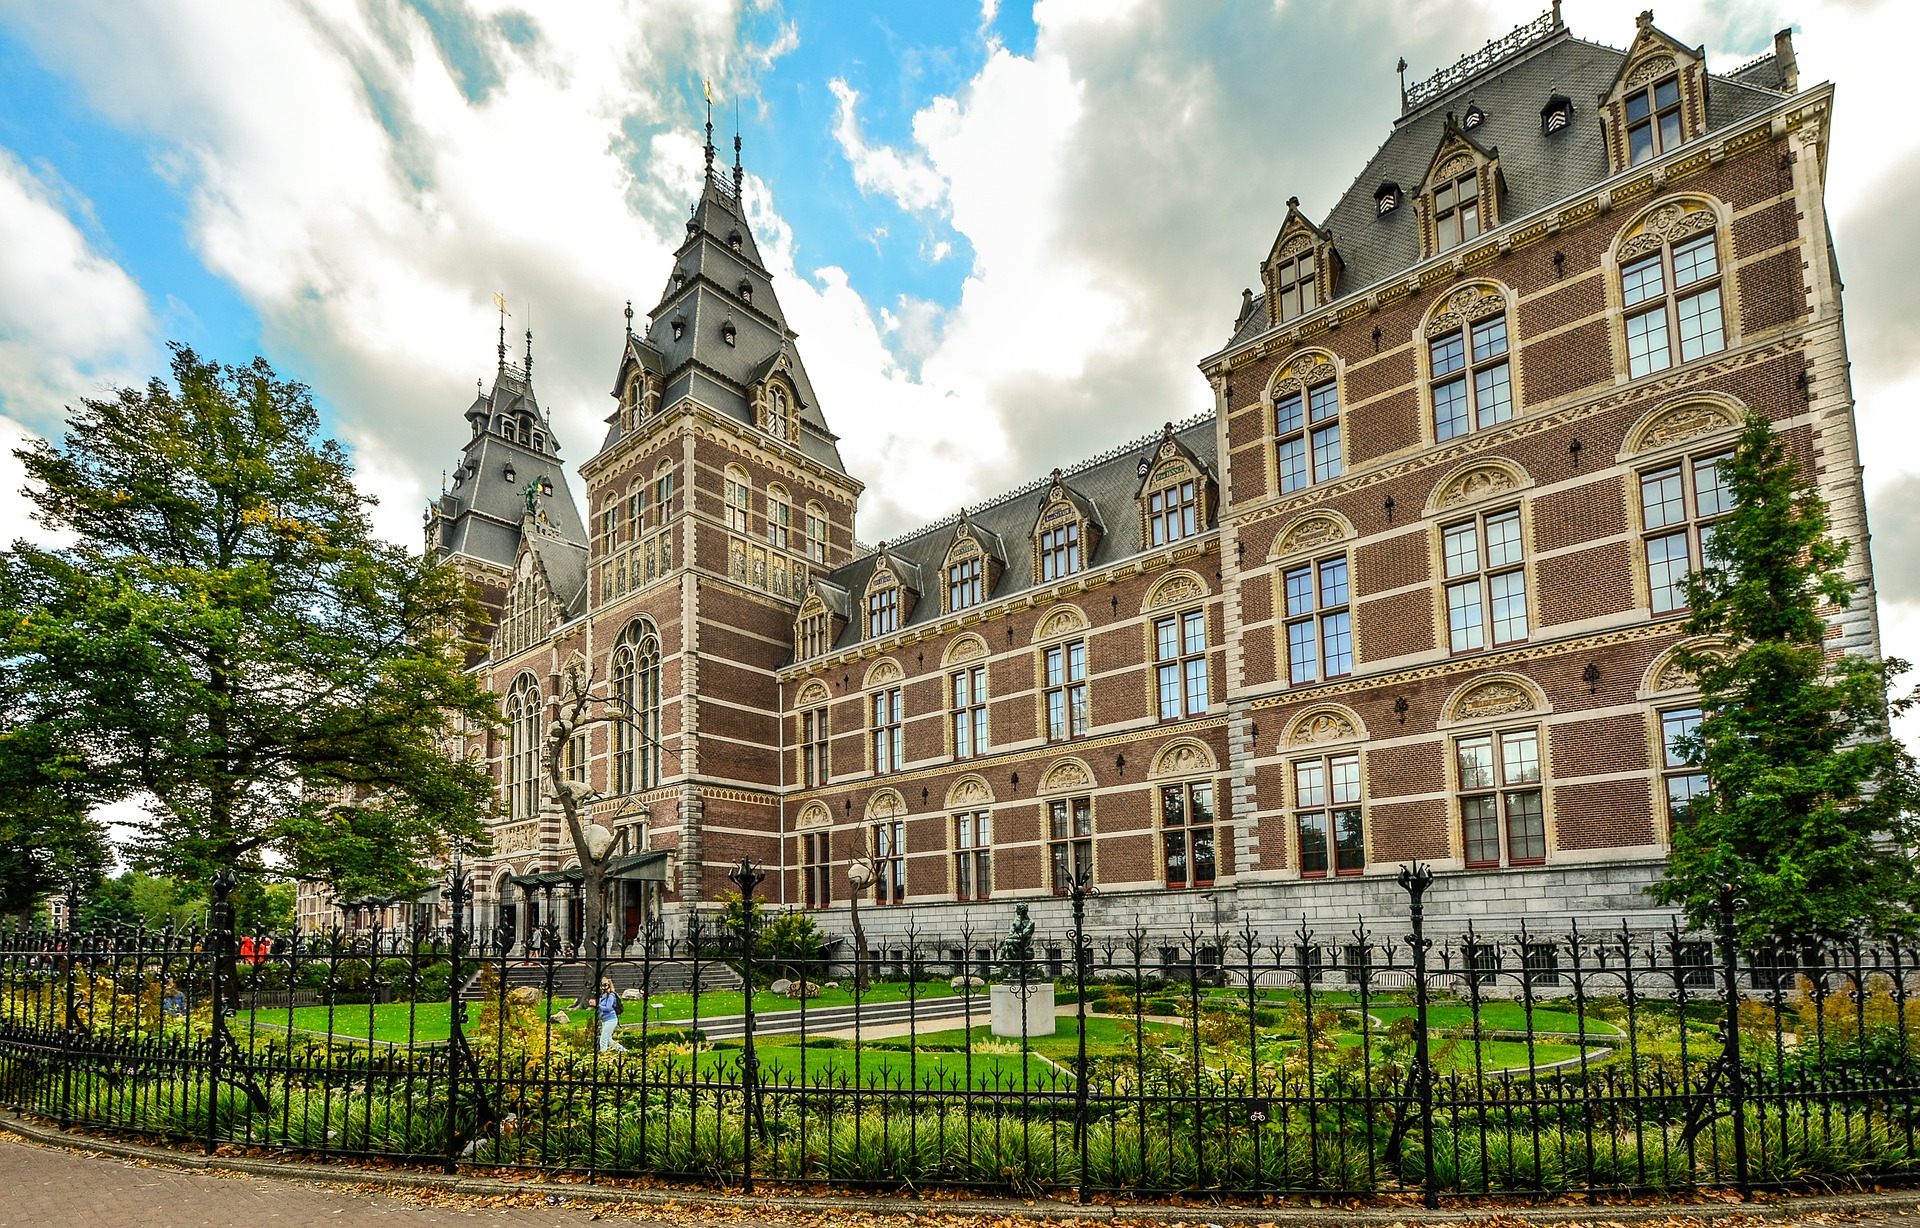 Virtual Field Trip: Rijksmuseum